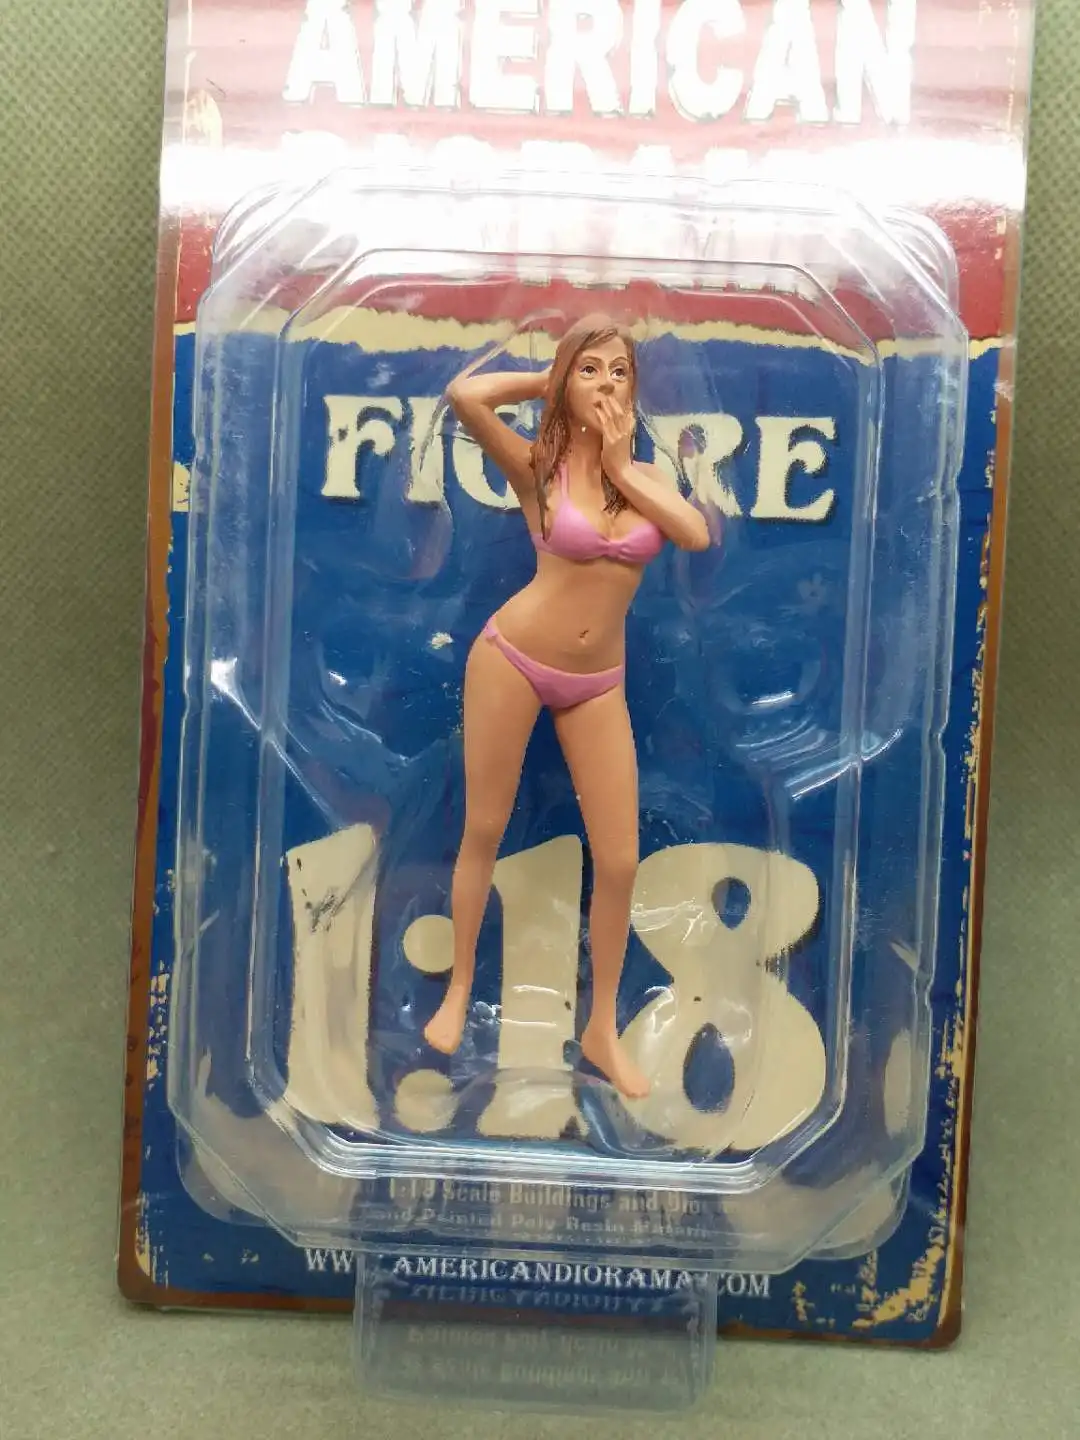 Американская экшн фигурка в масштабе 1:18 сочетающаяся бикини с изображением